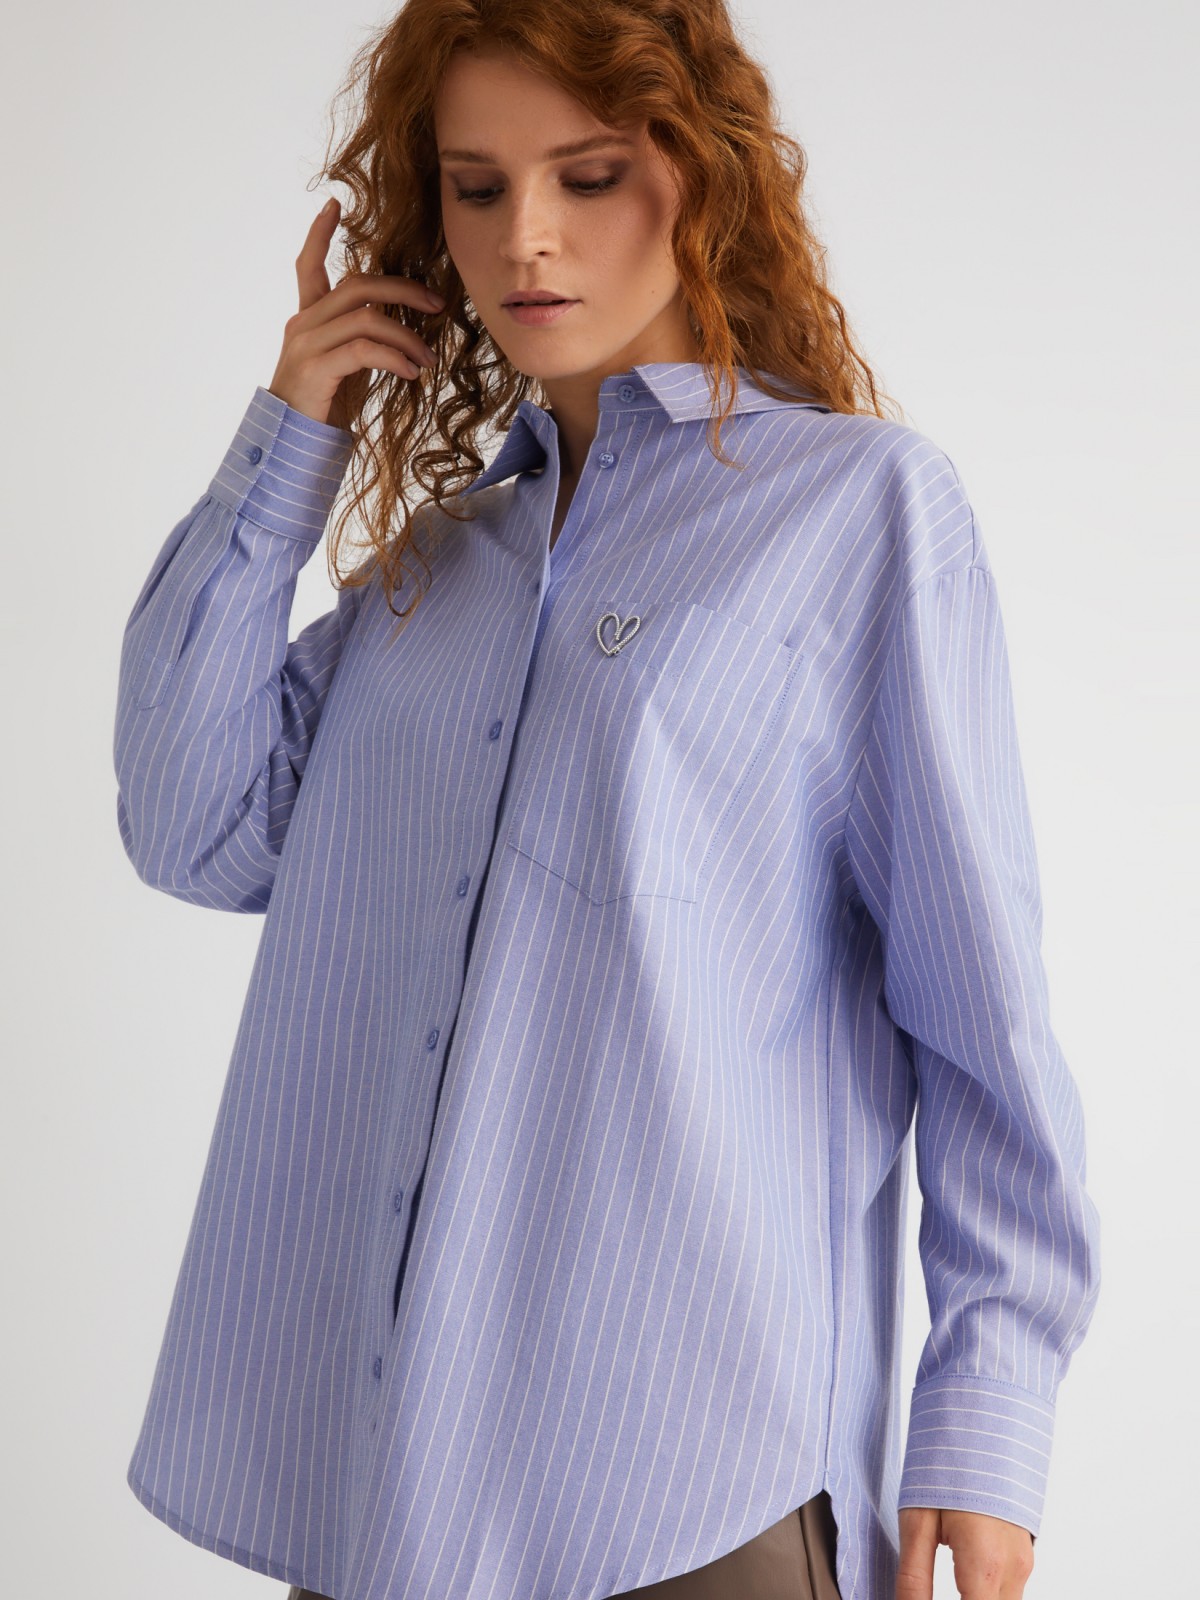 Офисная рубашка оверсайз силуэта в полоску с декоративной брошью zolla 023331162073, цвет светло-голубой, размер XS - фото 1